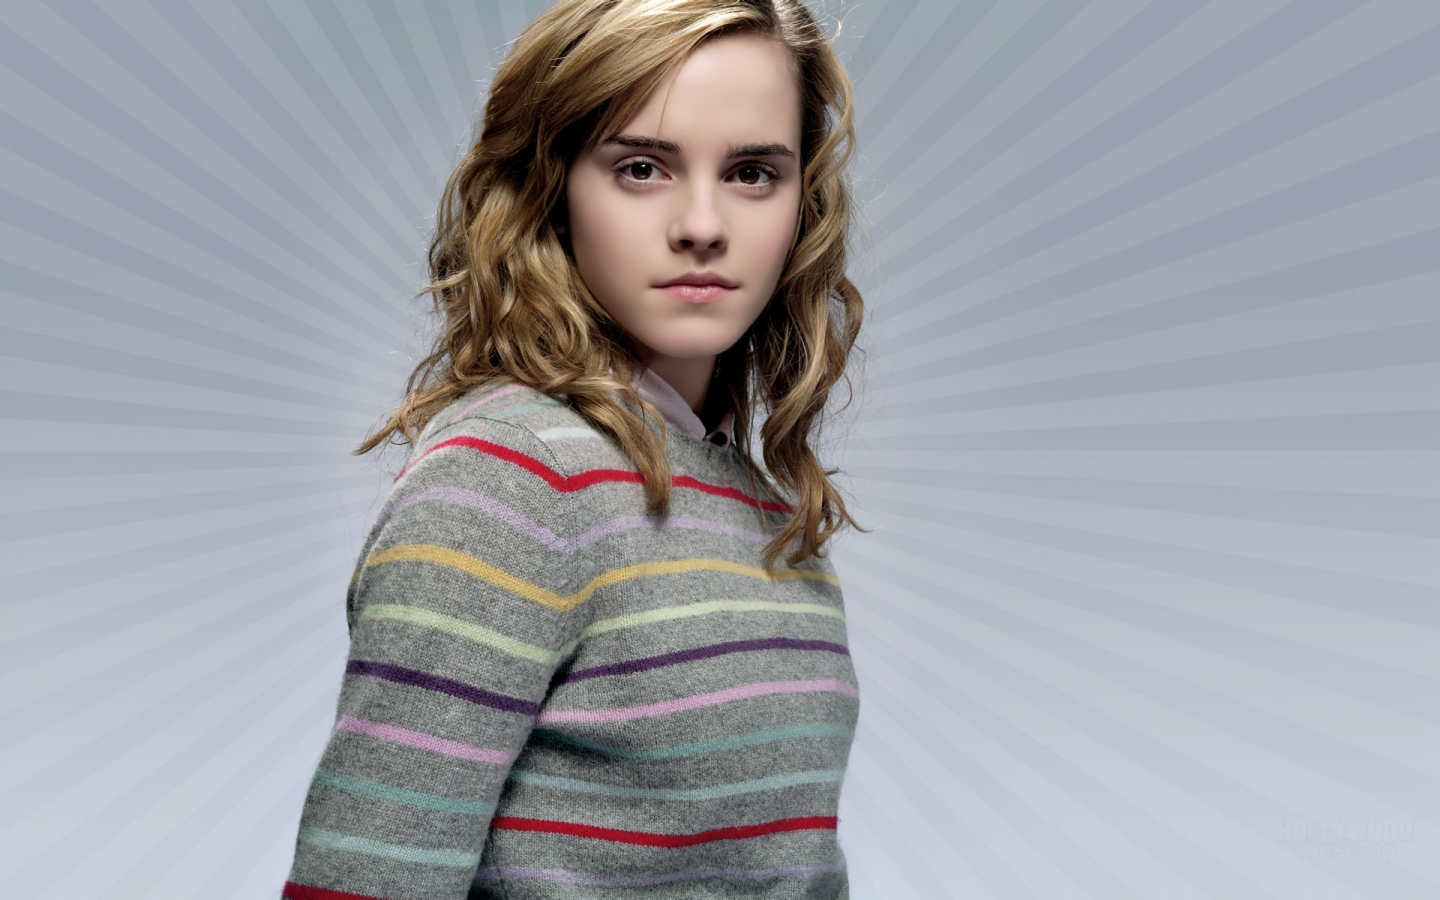 Beautiful Emma Watson for 1440 x 900 widescreen resolution